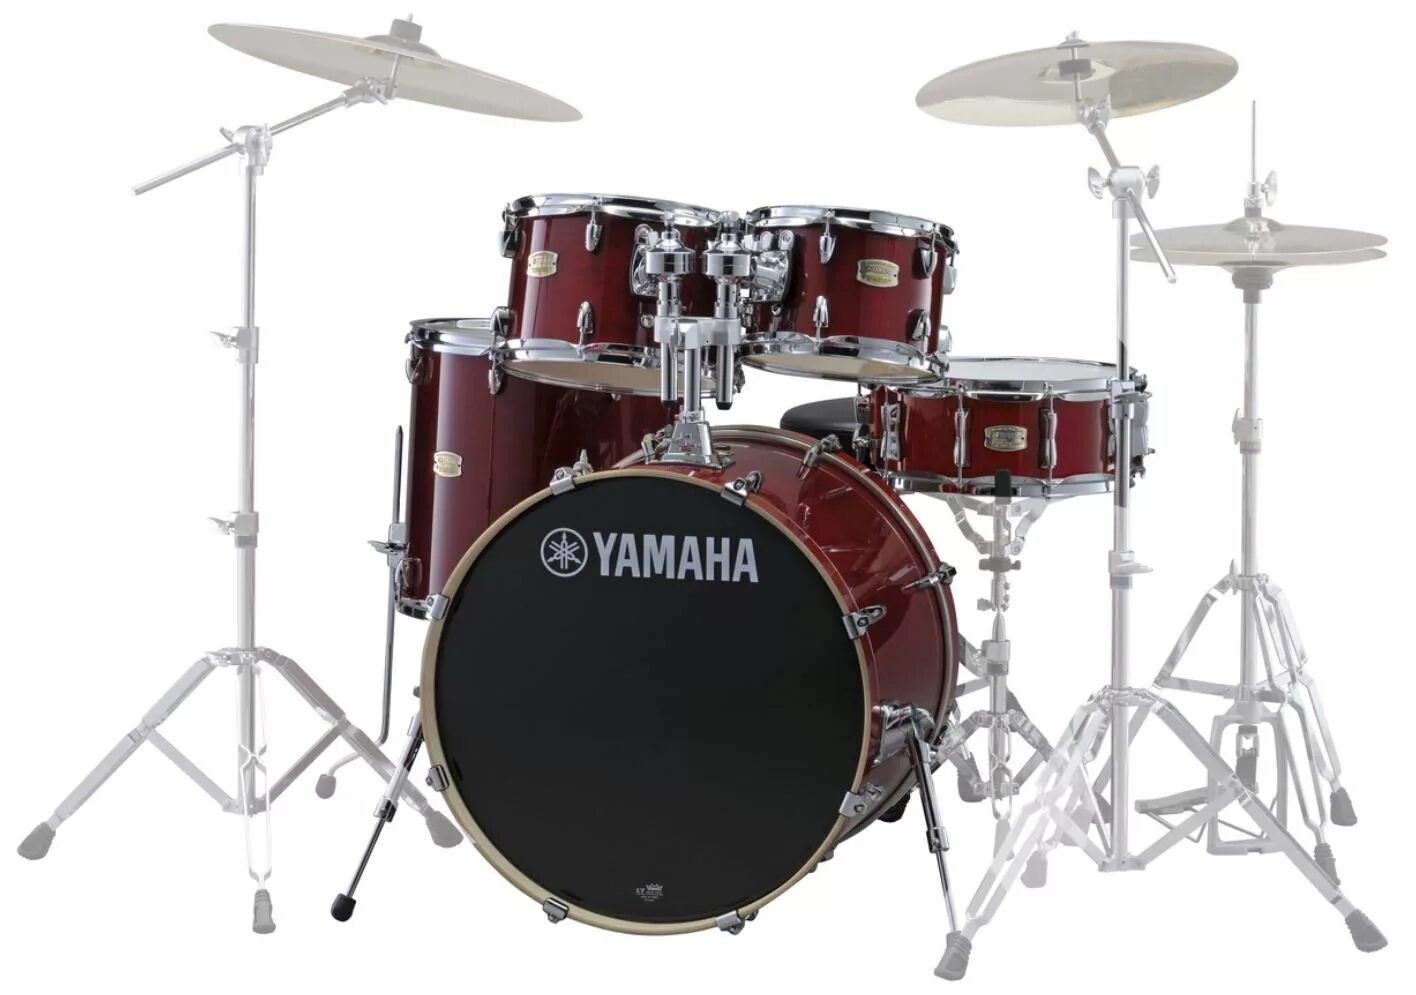 Барабаны Yamaha Stage Custom Birch. Малый барабан Yamaha Gigmaker. Ямаха Стейдж кастом барабаны. Yamaha sbp2f5 Cranberry Red.